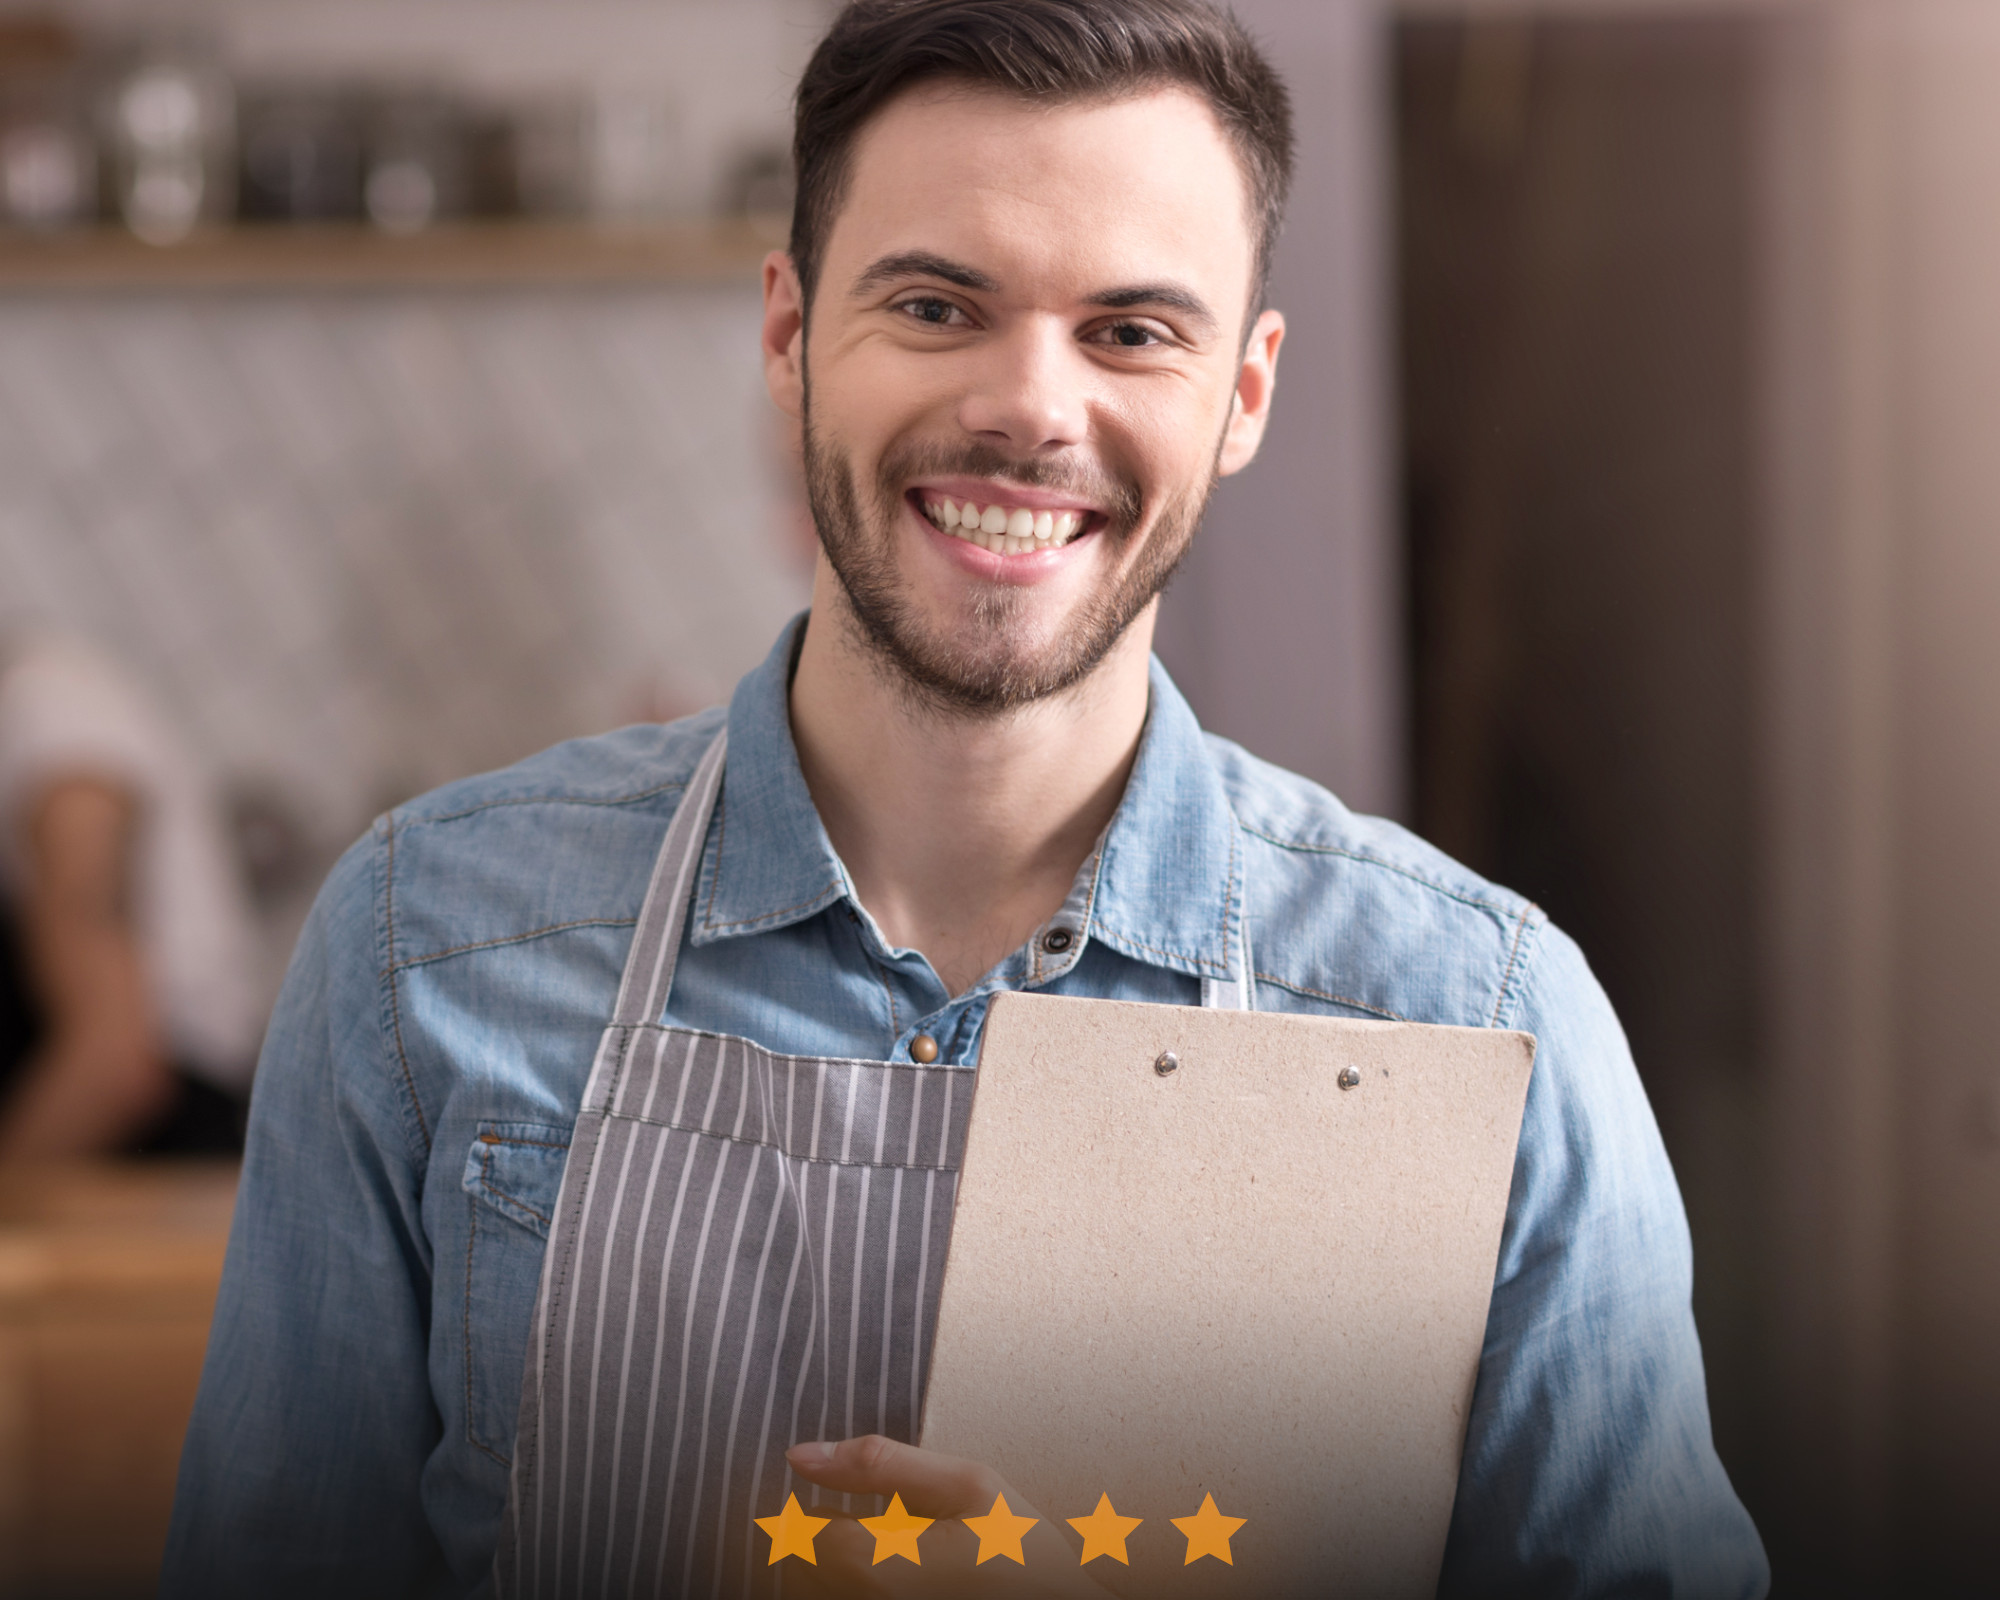 Serveur souriant avec un tablier tenant une planche à clip et cinq étoiles de satisfaction client.